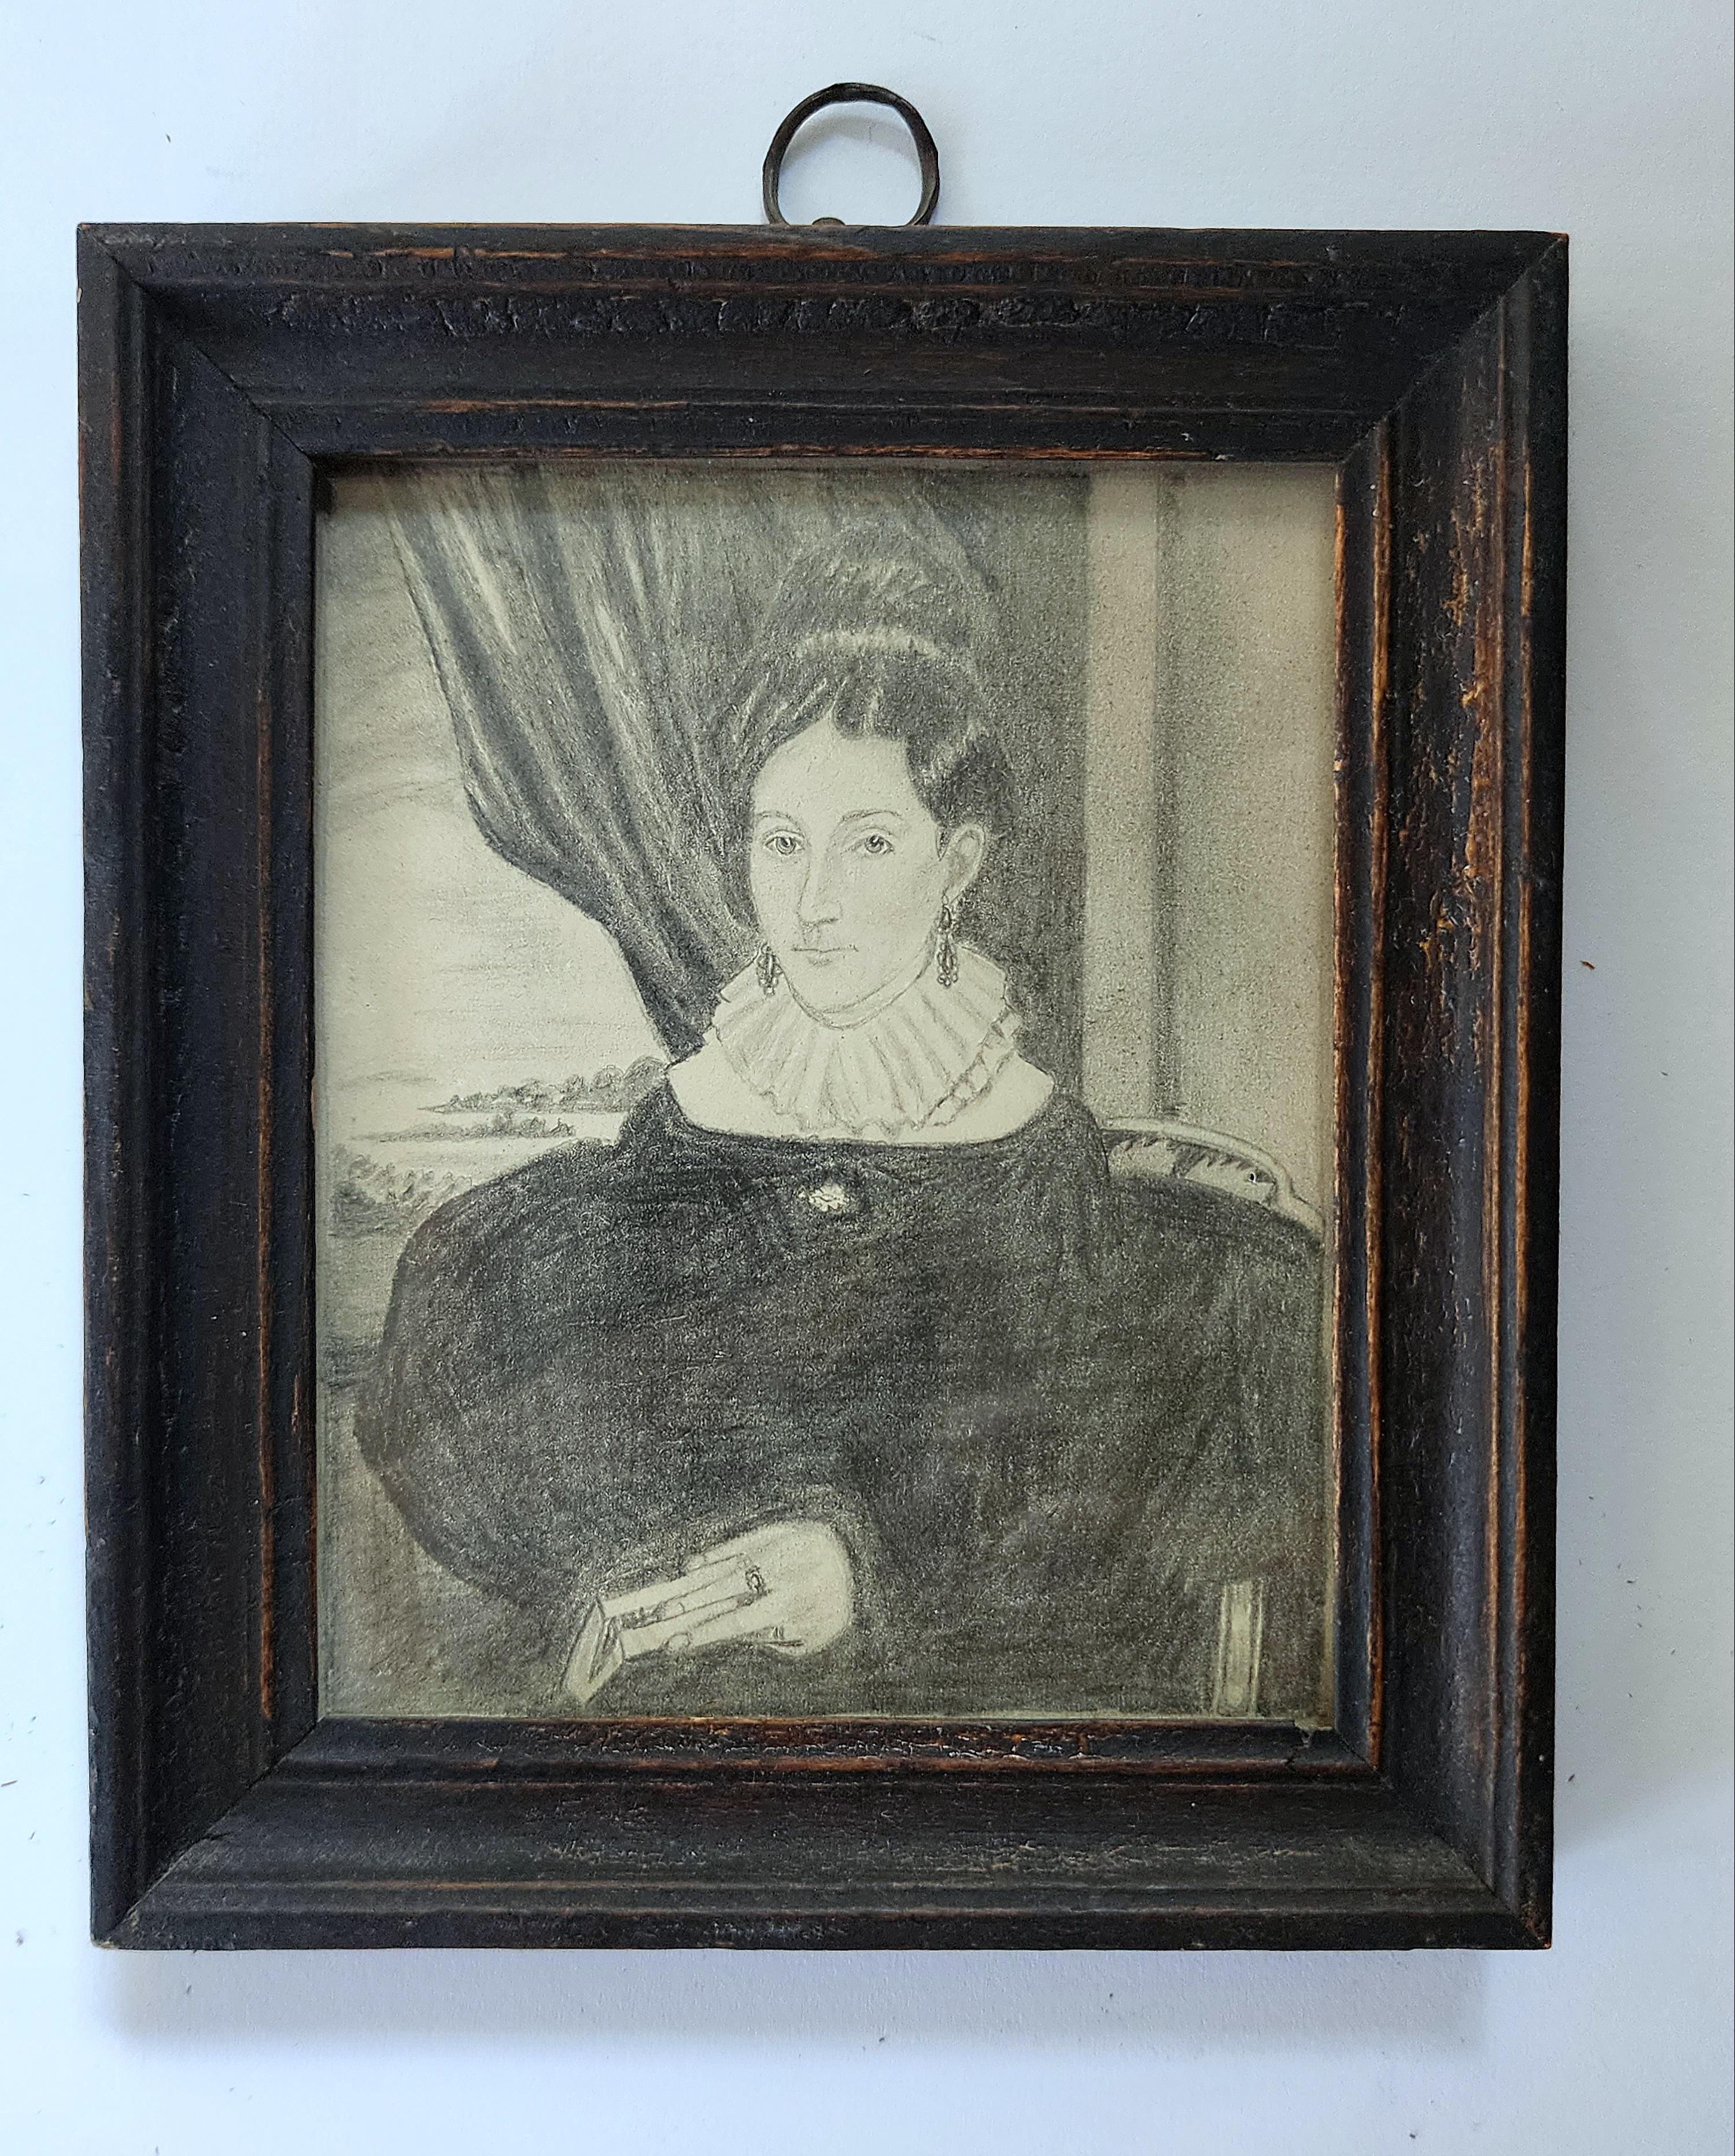 Dies ist ein sehr schönes, sehr detailliertes und gut ausgeführtes Porträt einer Frau. Erstellt im frühen neunzehnten Jahrhundert mit Graphit auf Papier. Die Dargestellte ist mit einem Buch in der Hand und einem Ring am Finger zu sehen. Sie sitzt in